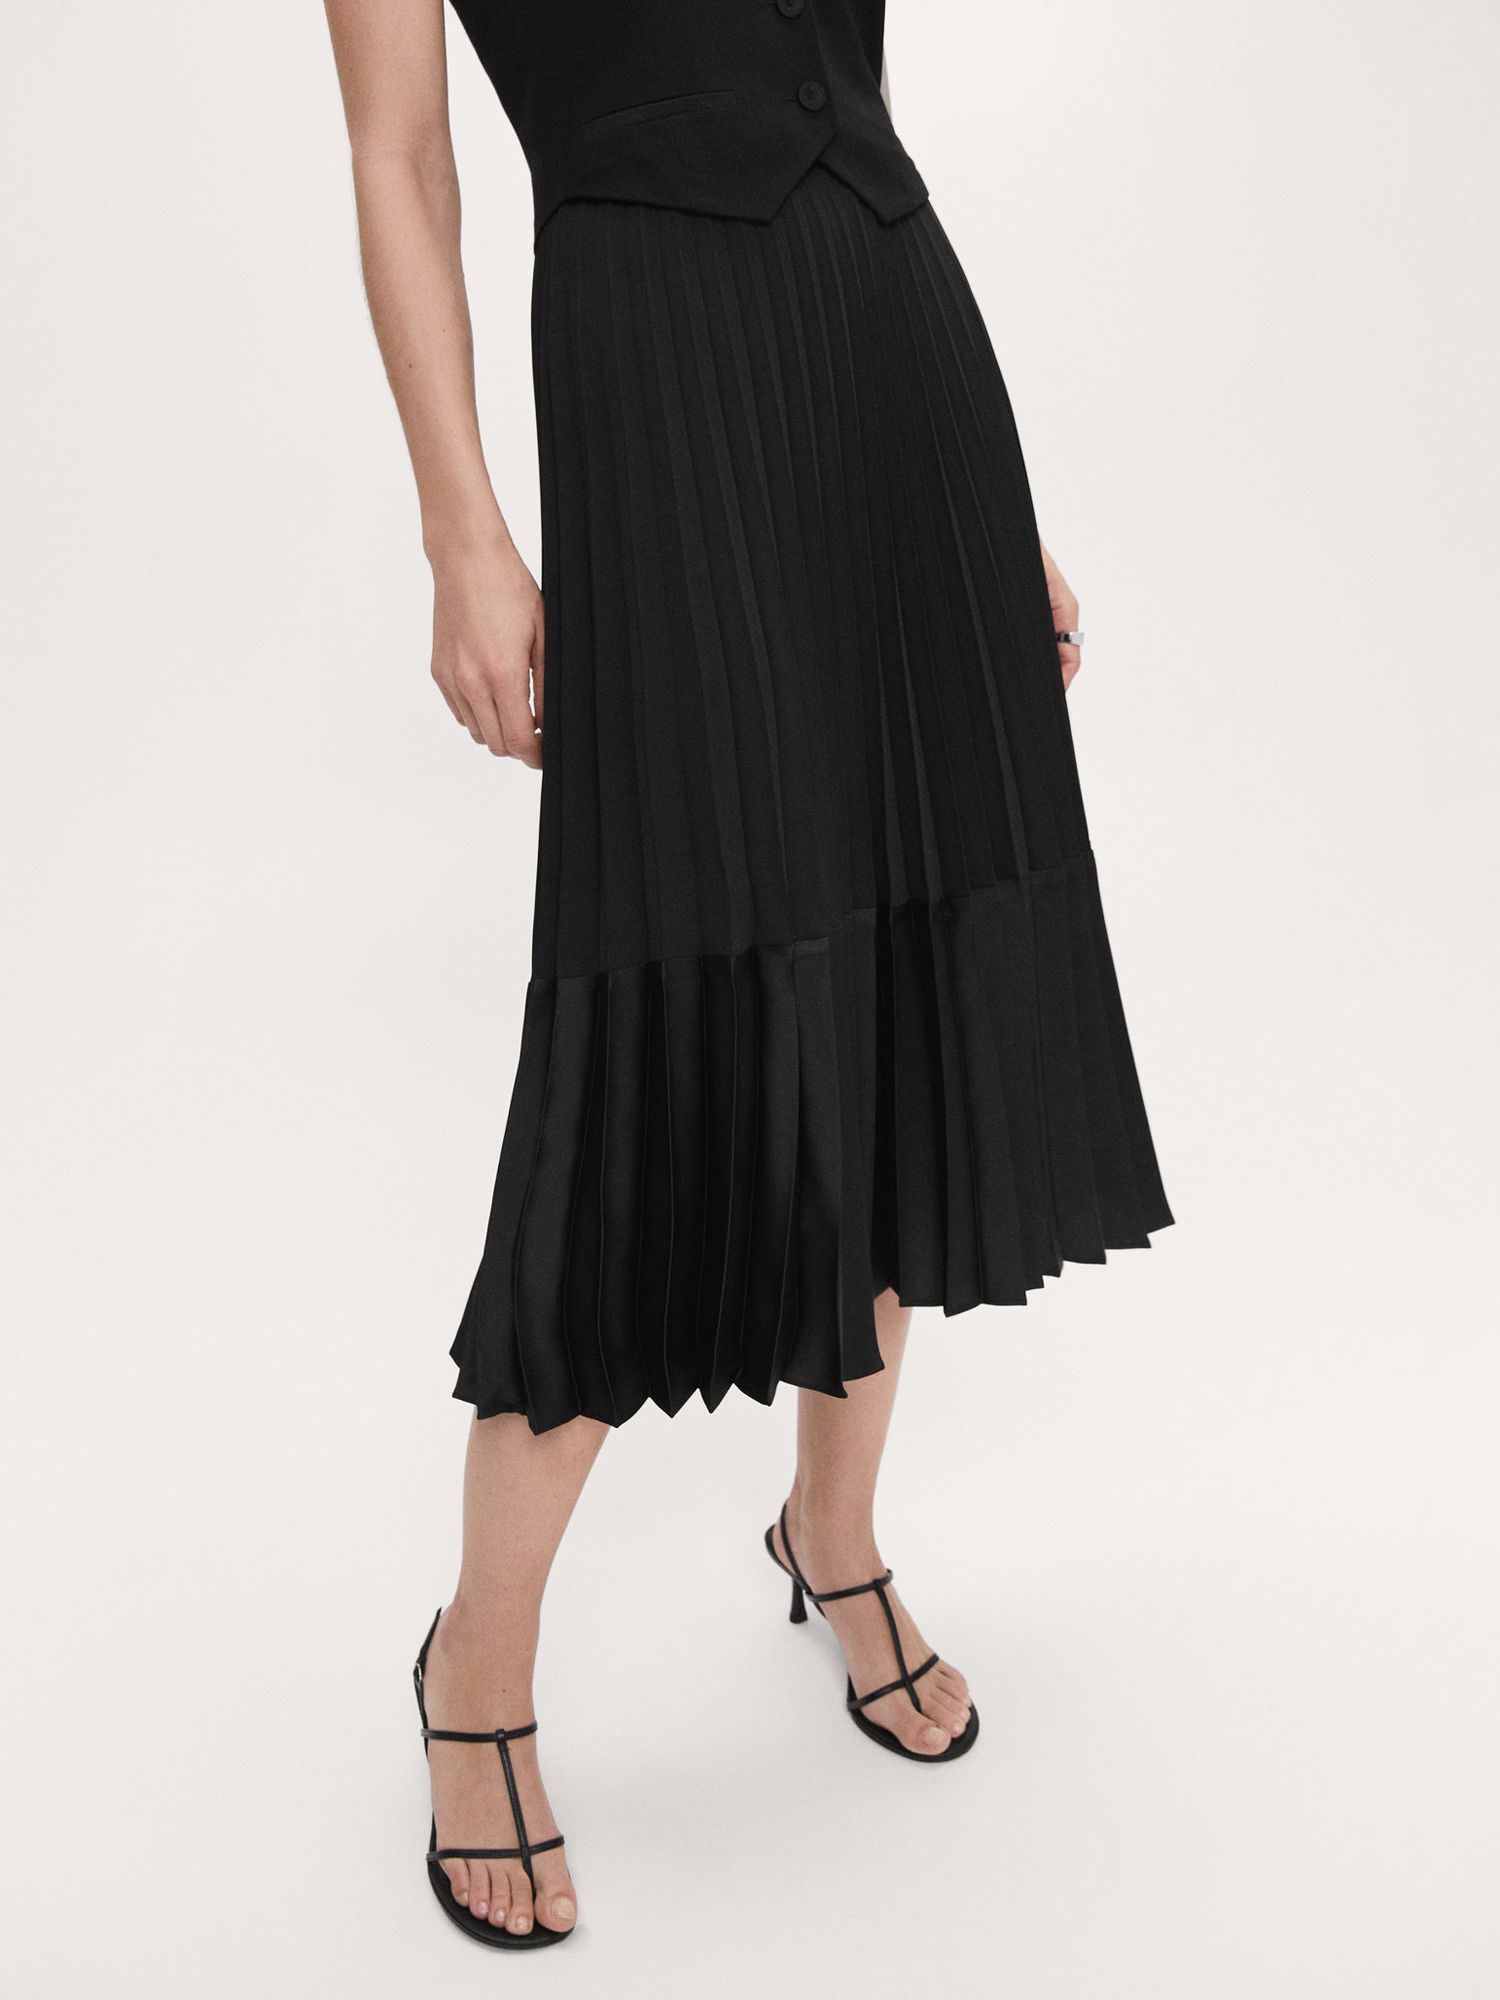 Mango Soleil Satin Pleated Midi Skirt, Black